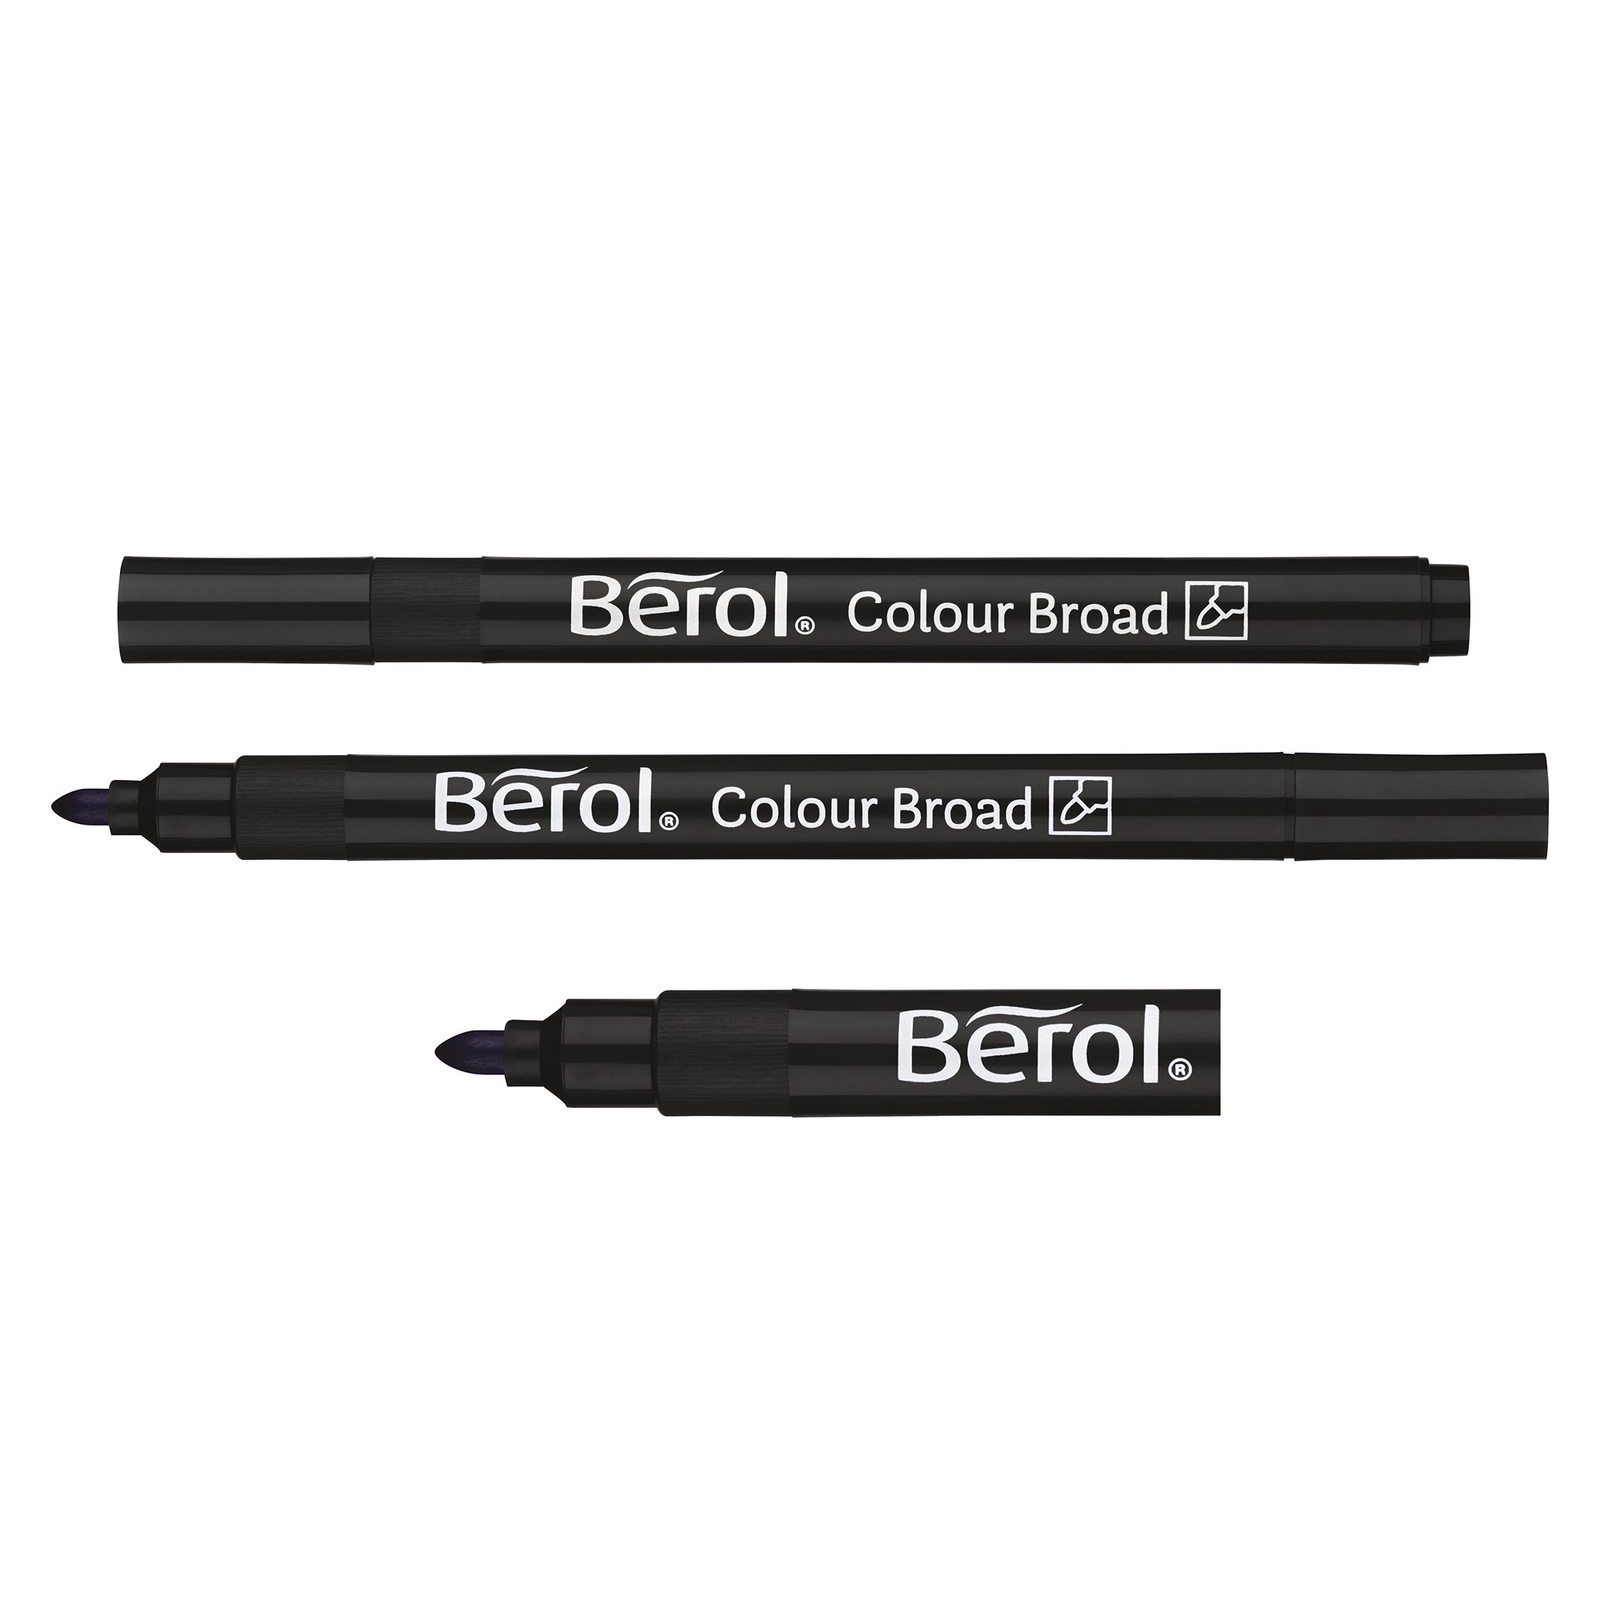 Berol Colour Broad Pens - Black